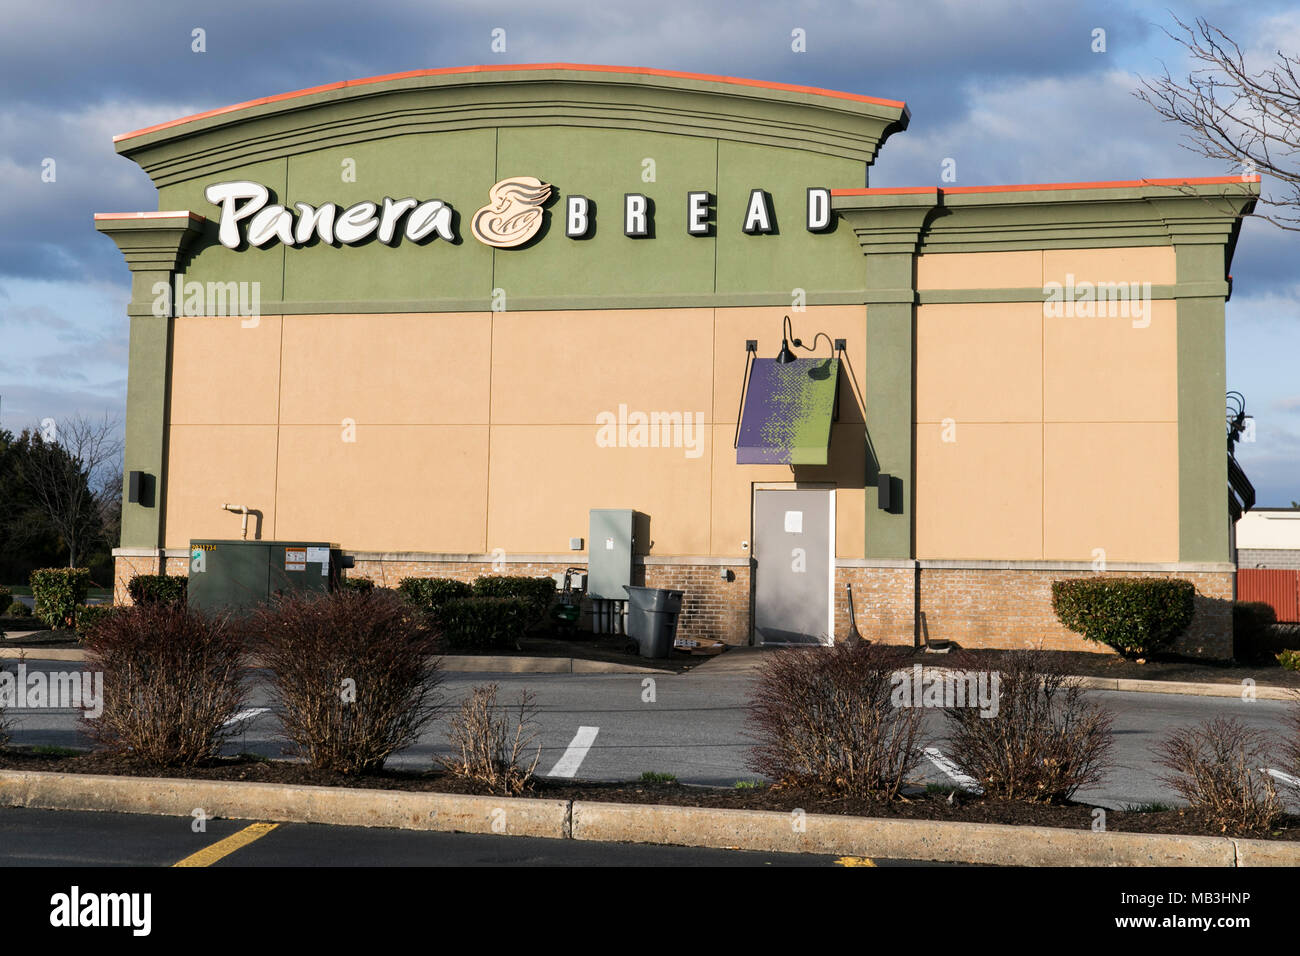 Panera Bread Un restaurant décontracté situé dans la région de Hagerstown, Maryland le 5 avril 2018. Banque D'Images